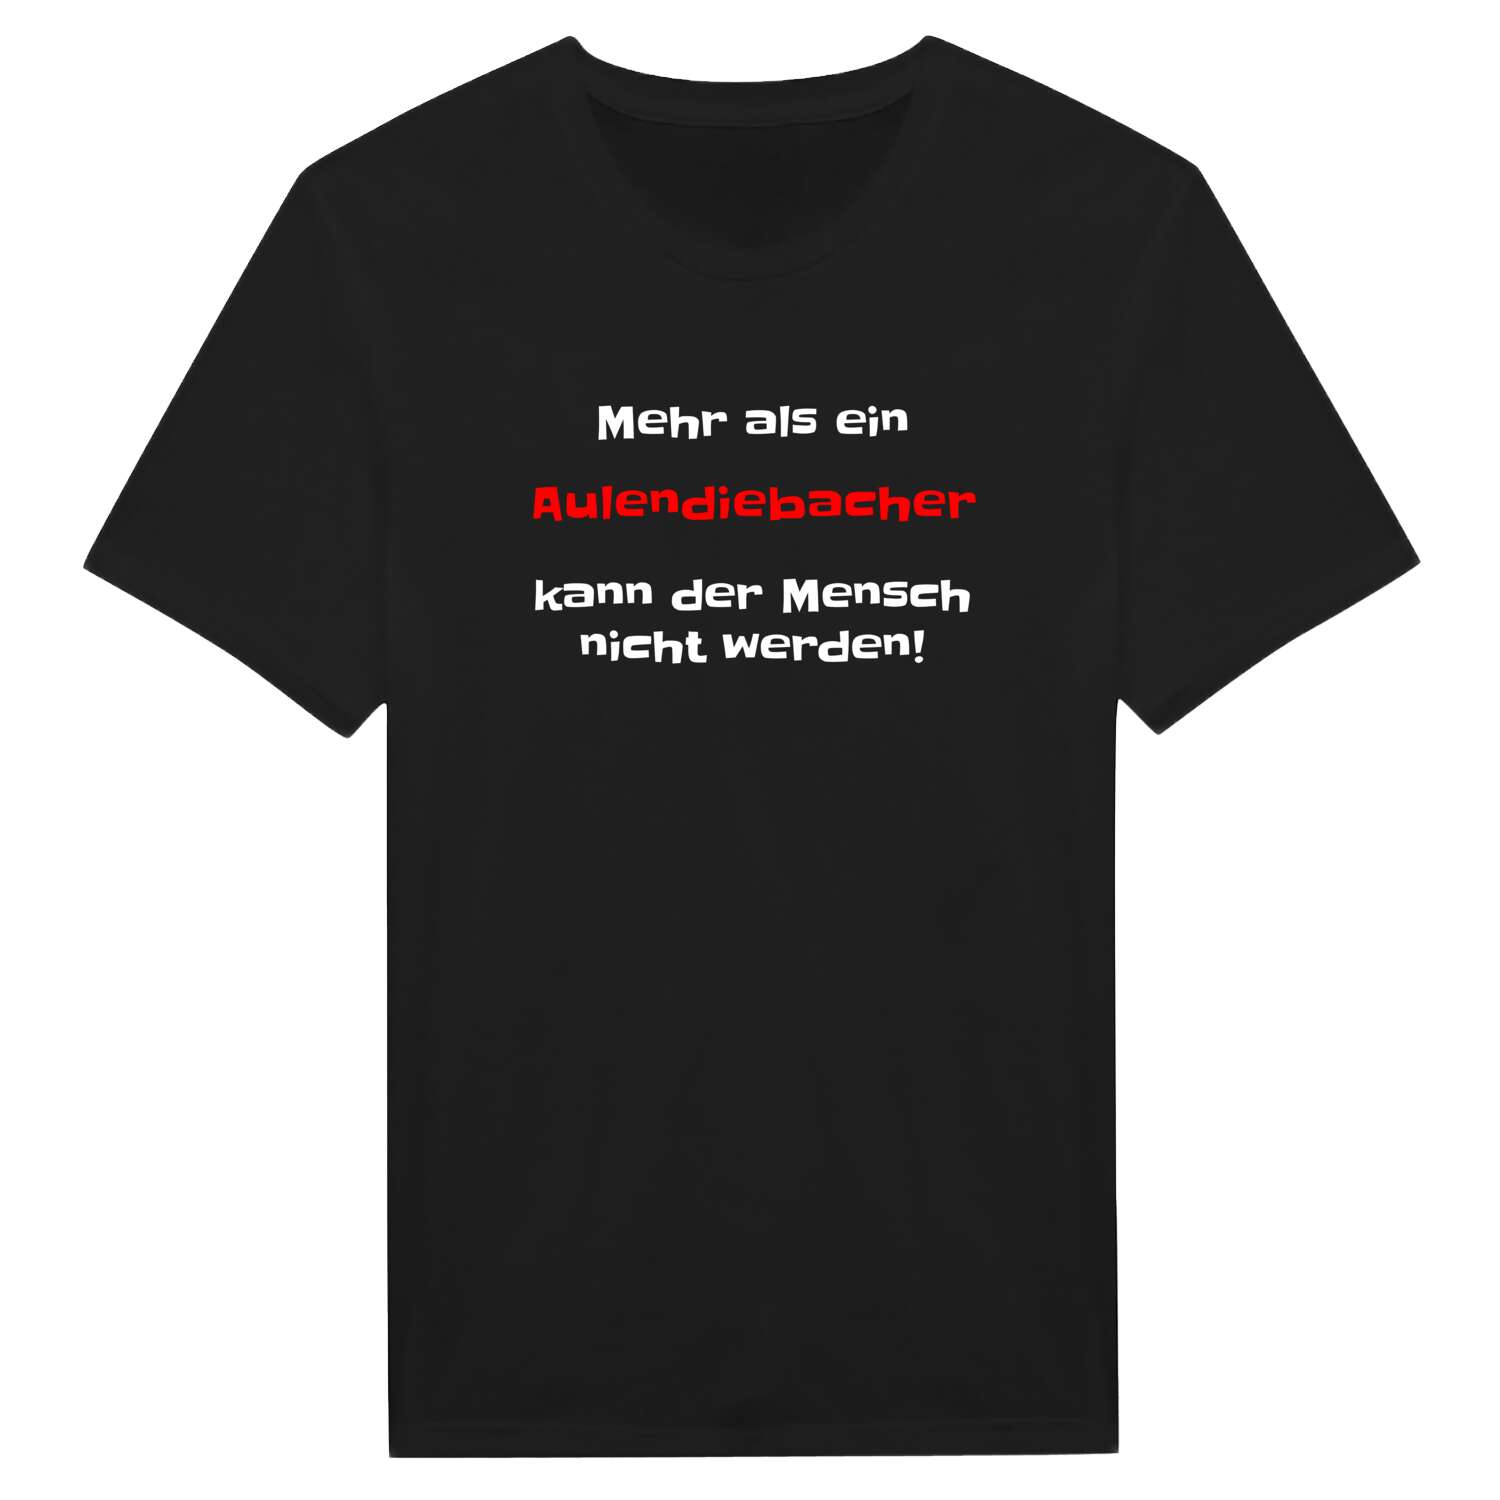 Aulendiebach T-Shirt »Mehr als ein«